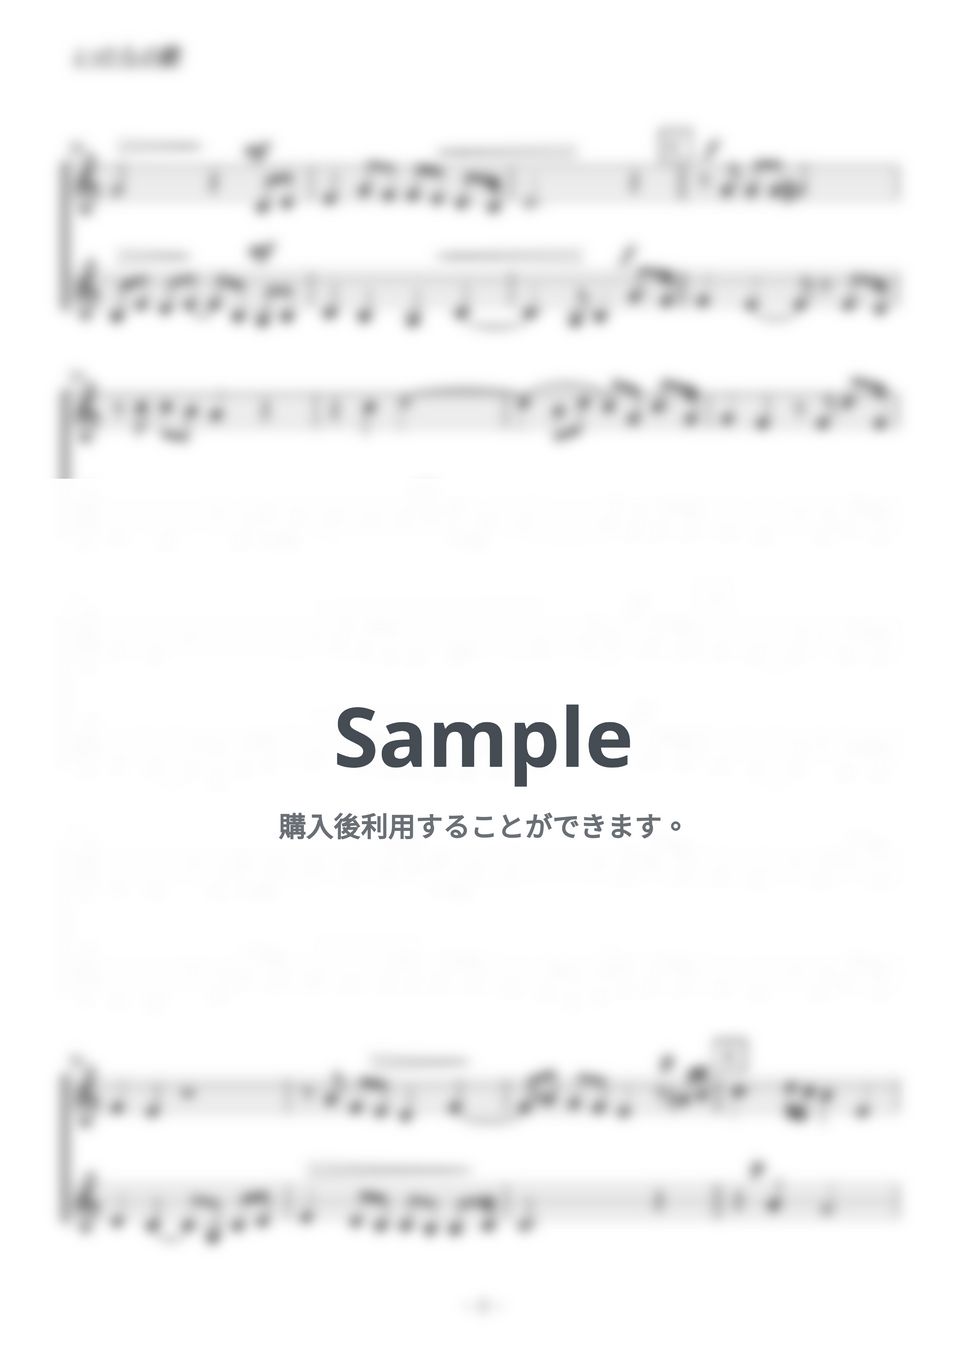 竹内まりや - いのちの歌 (ヴァイオリン二重奏／無伴奏) by kiminabe